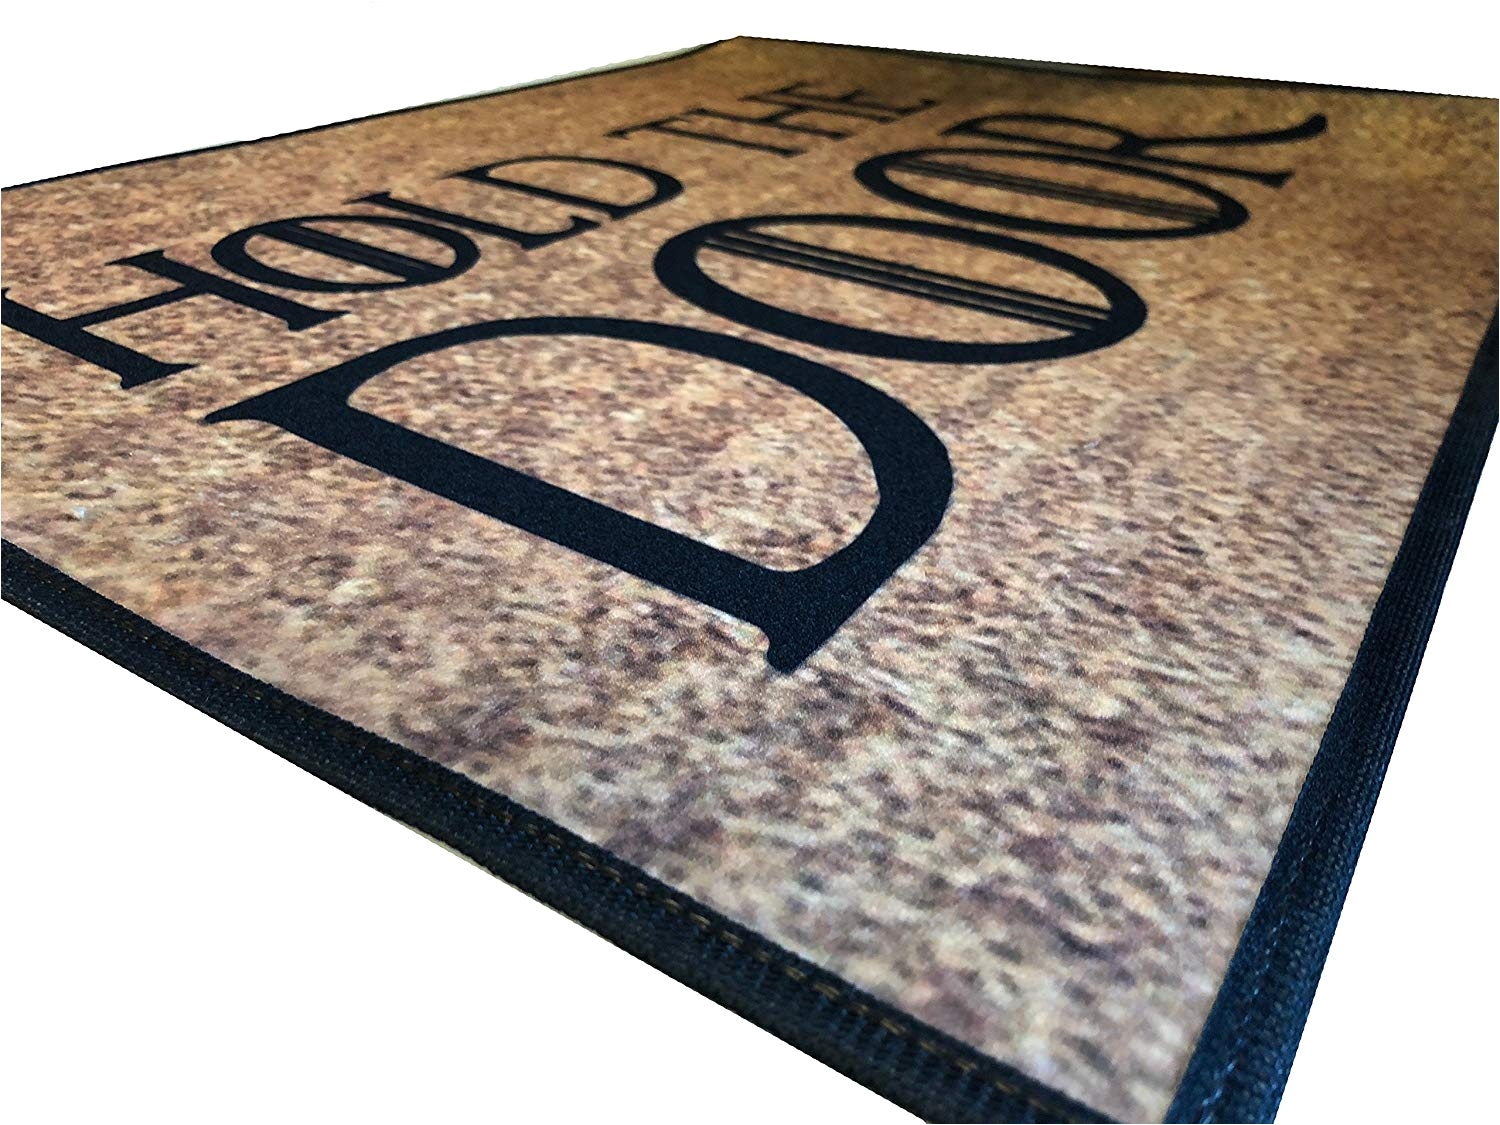 amazon com hold the door welcome mat 18x24 indoor outdoor doormat rug by eandm home kitchen